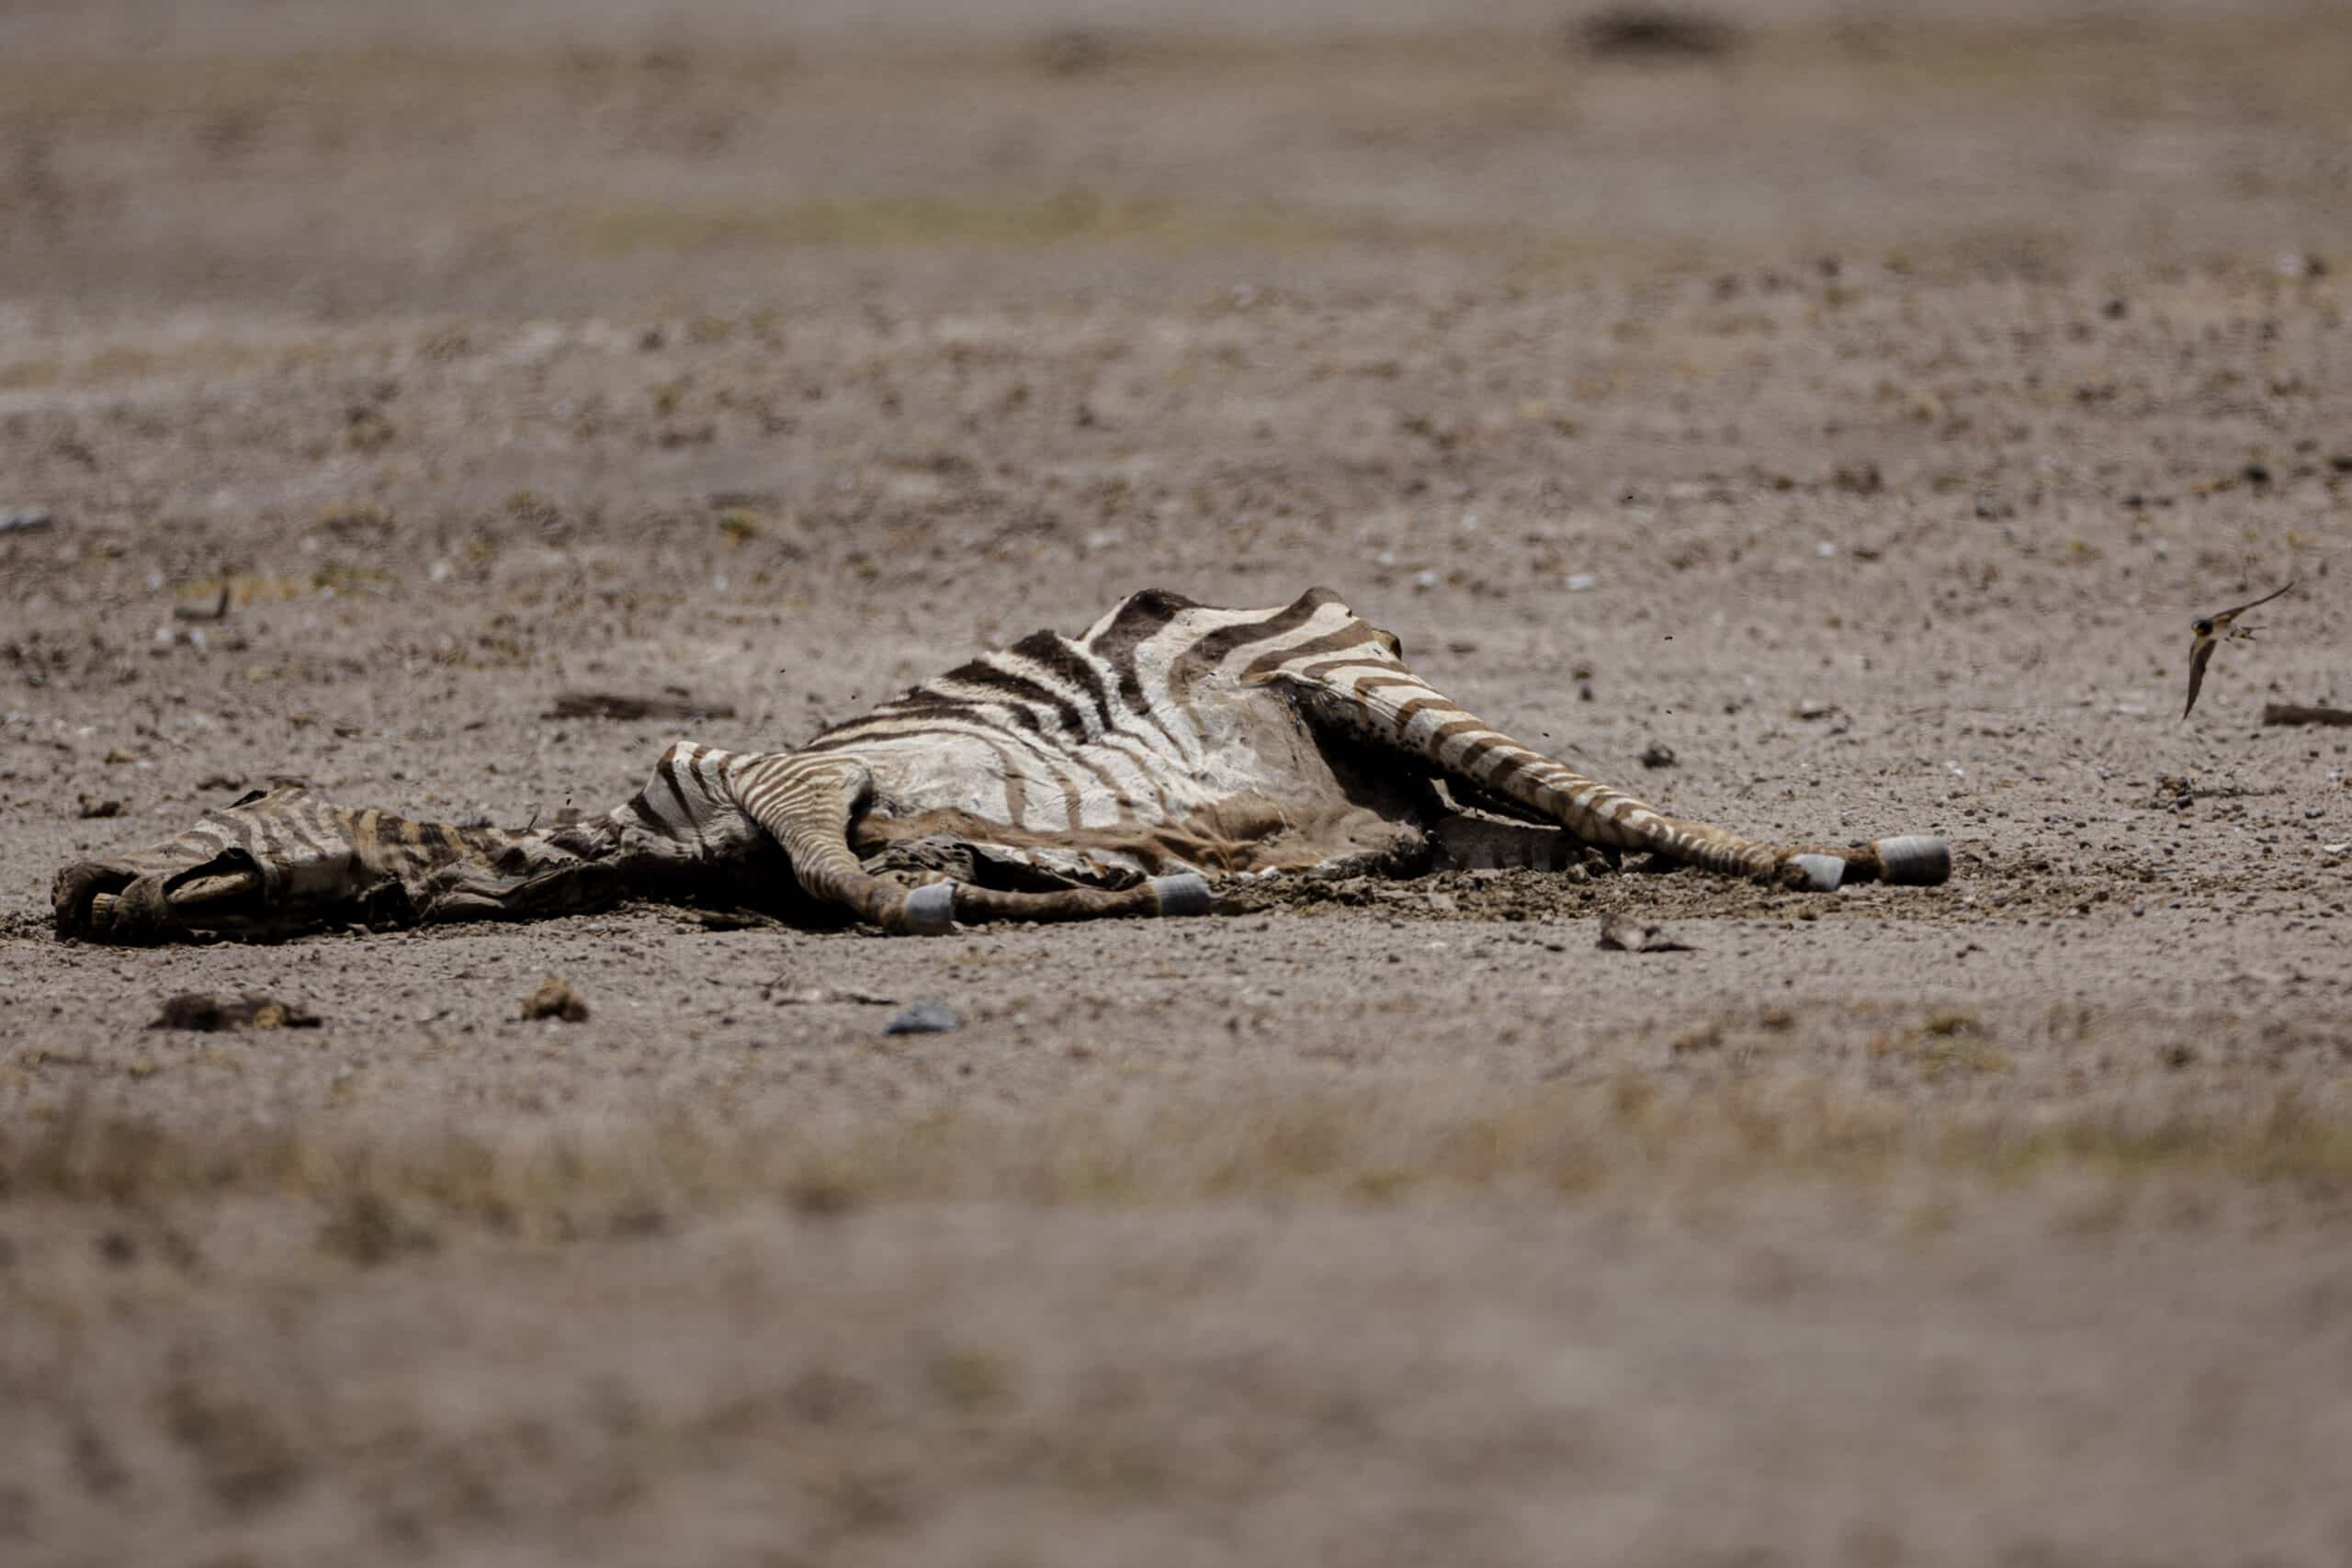 Ein totes Zebra liegt auf trockenem, rissigem Boden. Sein Körper weist charakteristische Streifen auf und seine staubige Beschaffenheit weist auf eine raue Umgebung hin. © Fotografie Tomas Rodriguez